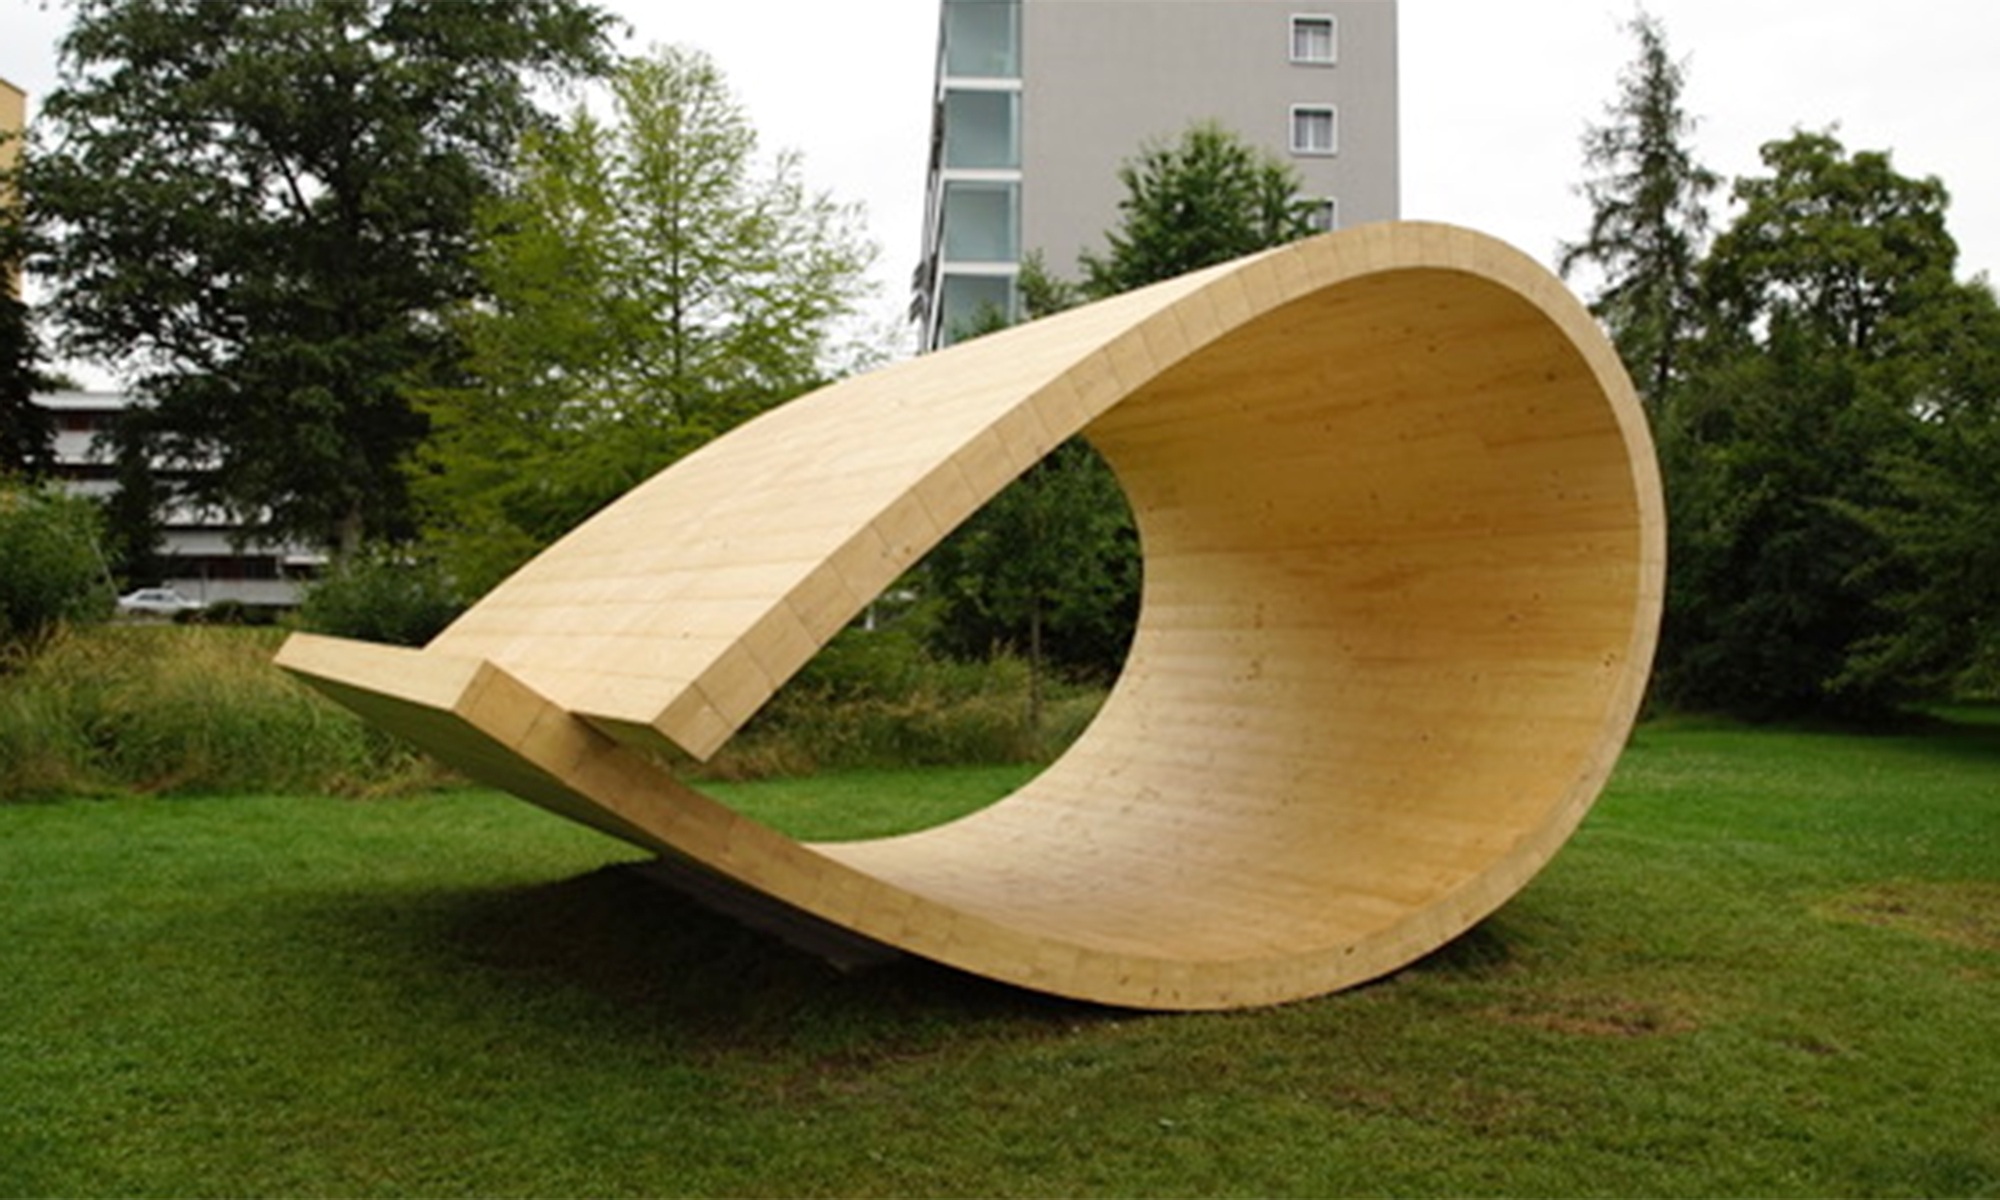 Der Klangraum-Pavillon ist eine Skulptur in Form einer Schlaufe aus Holz. Sie befindet sich in einem Park in Zürich.